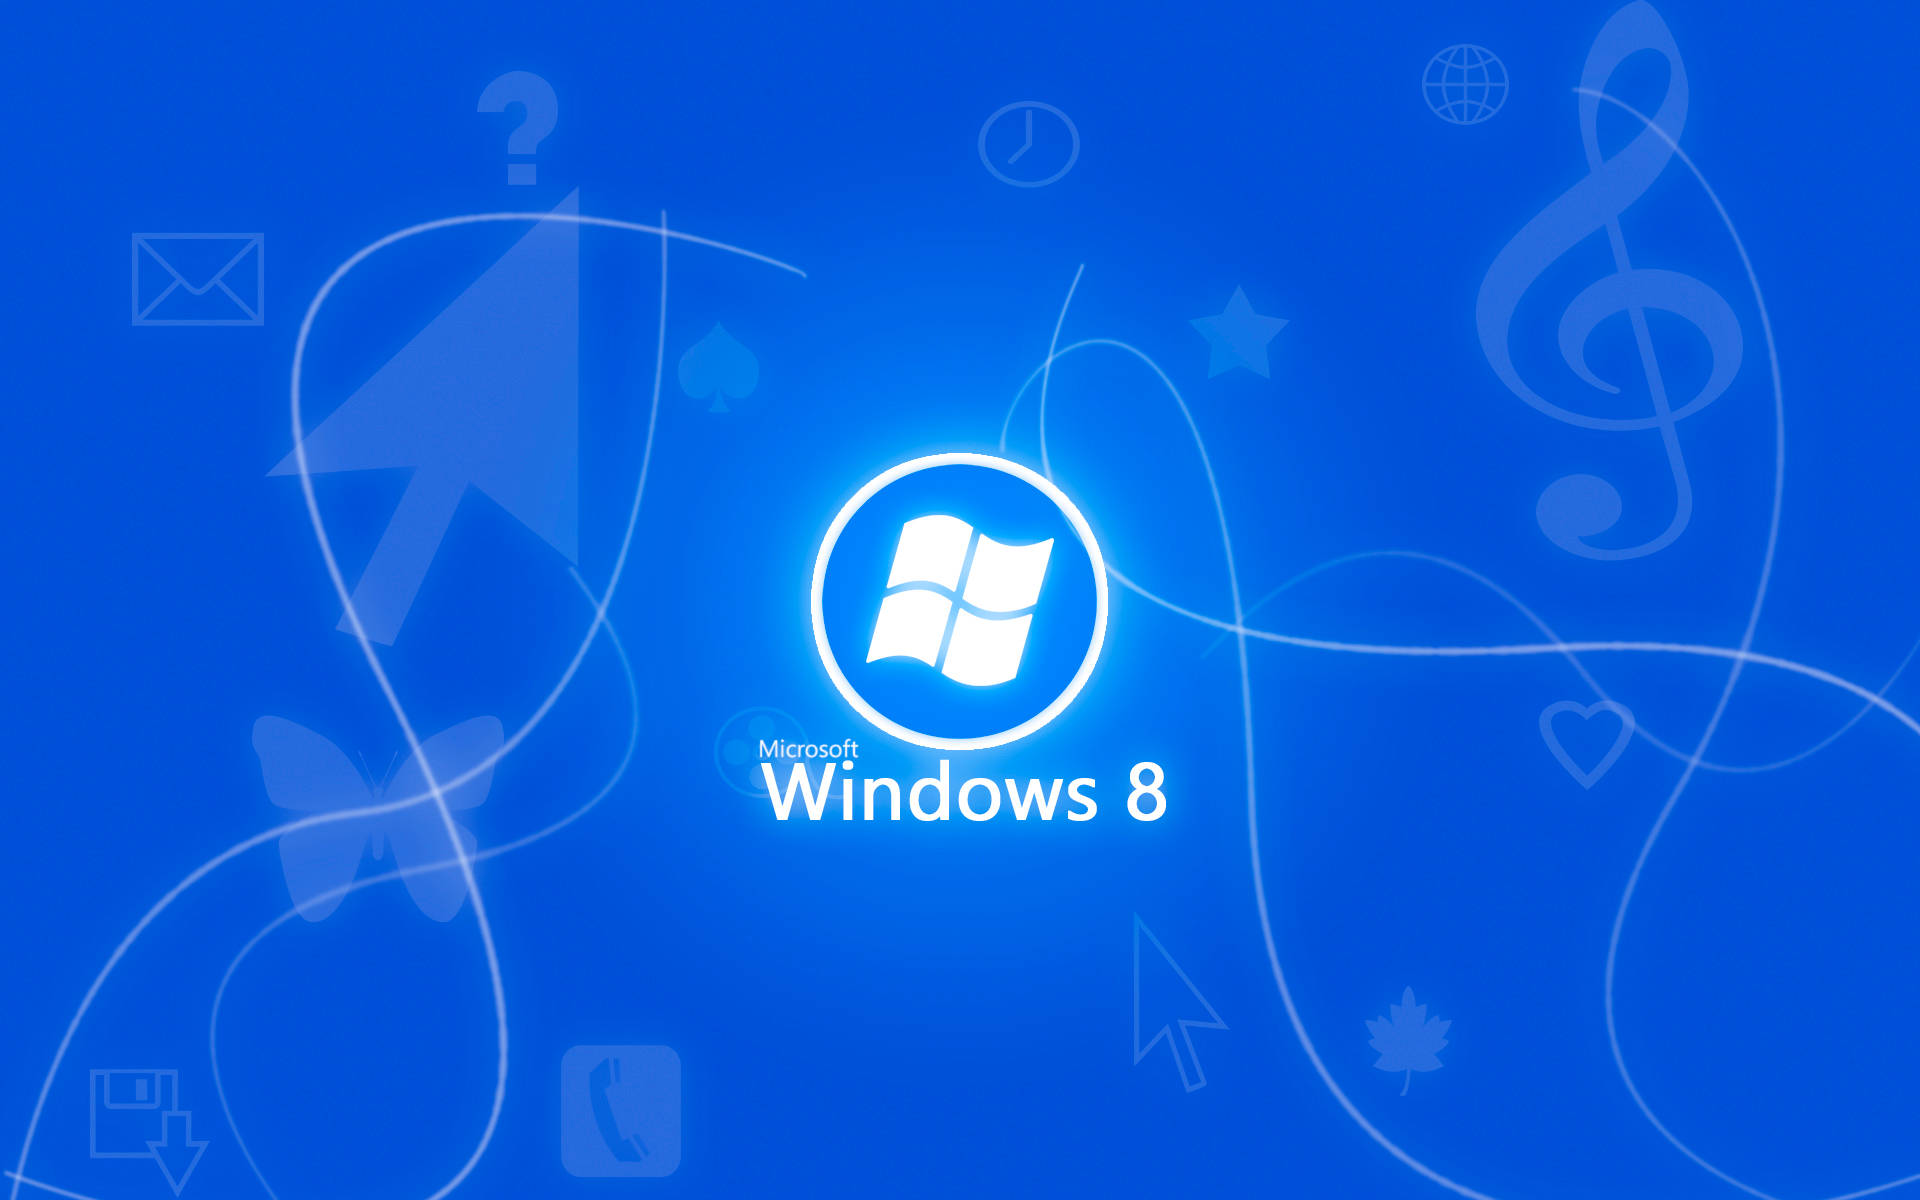 Neon Windows 8 Logo In Blue Wallpaper